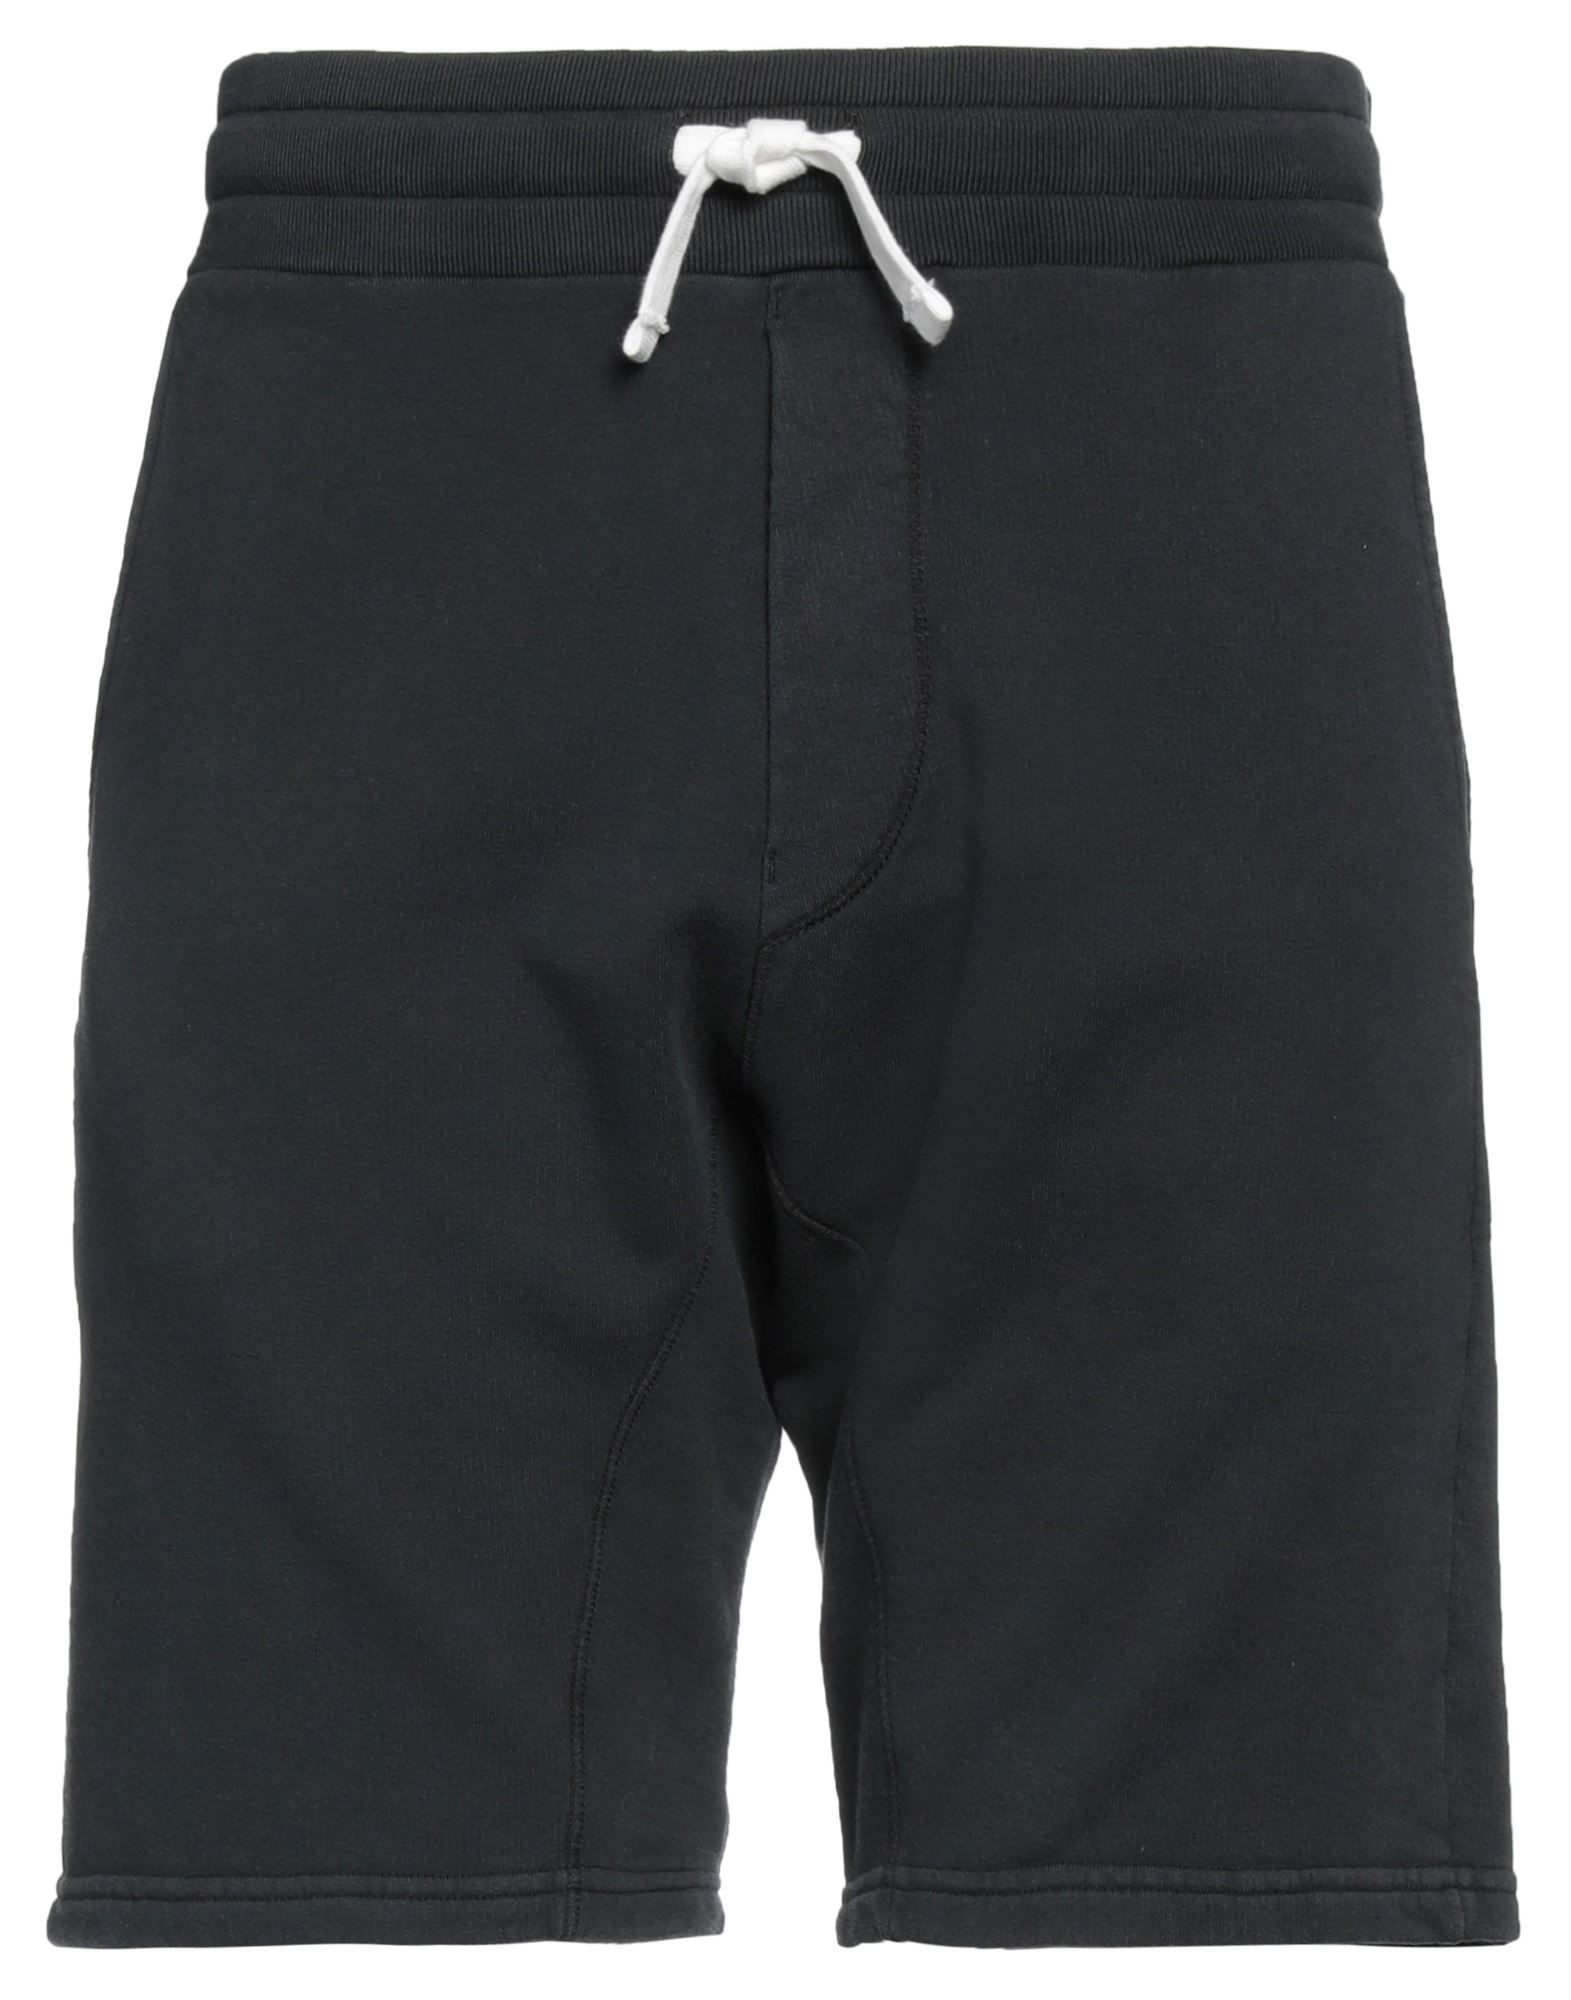 BOWERY Shorts & Bermuda Shorts